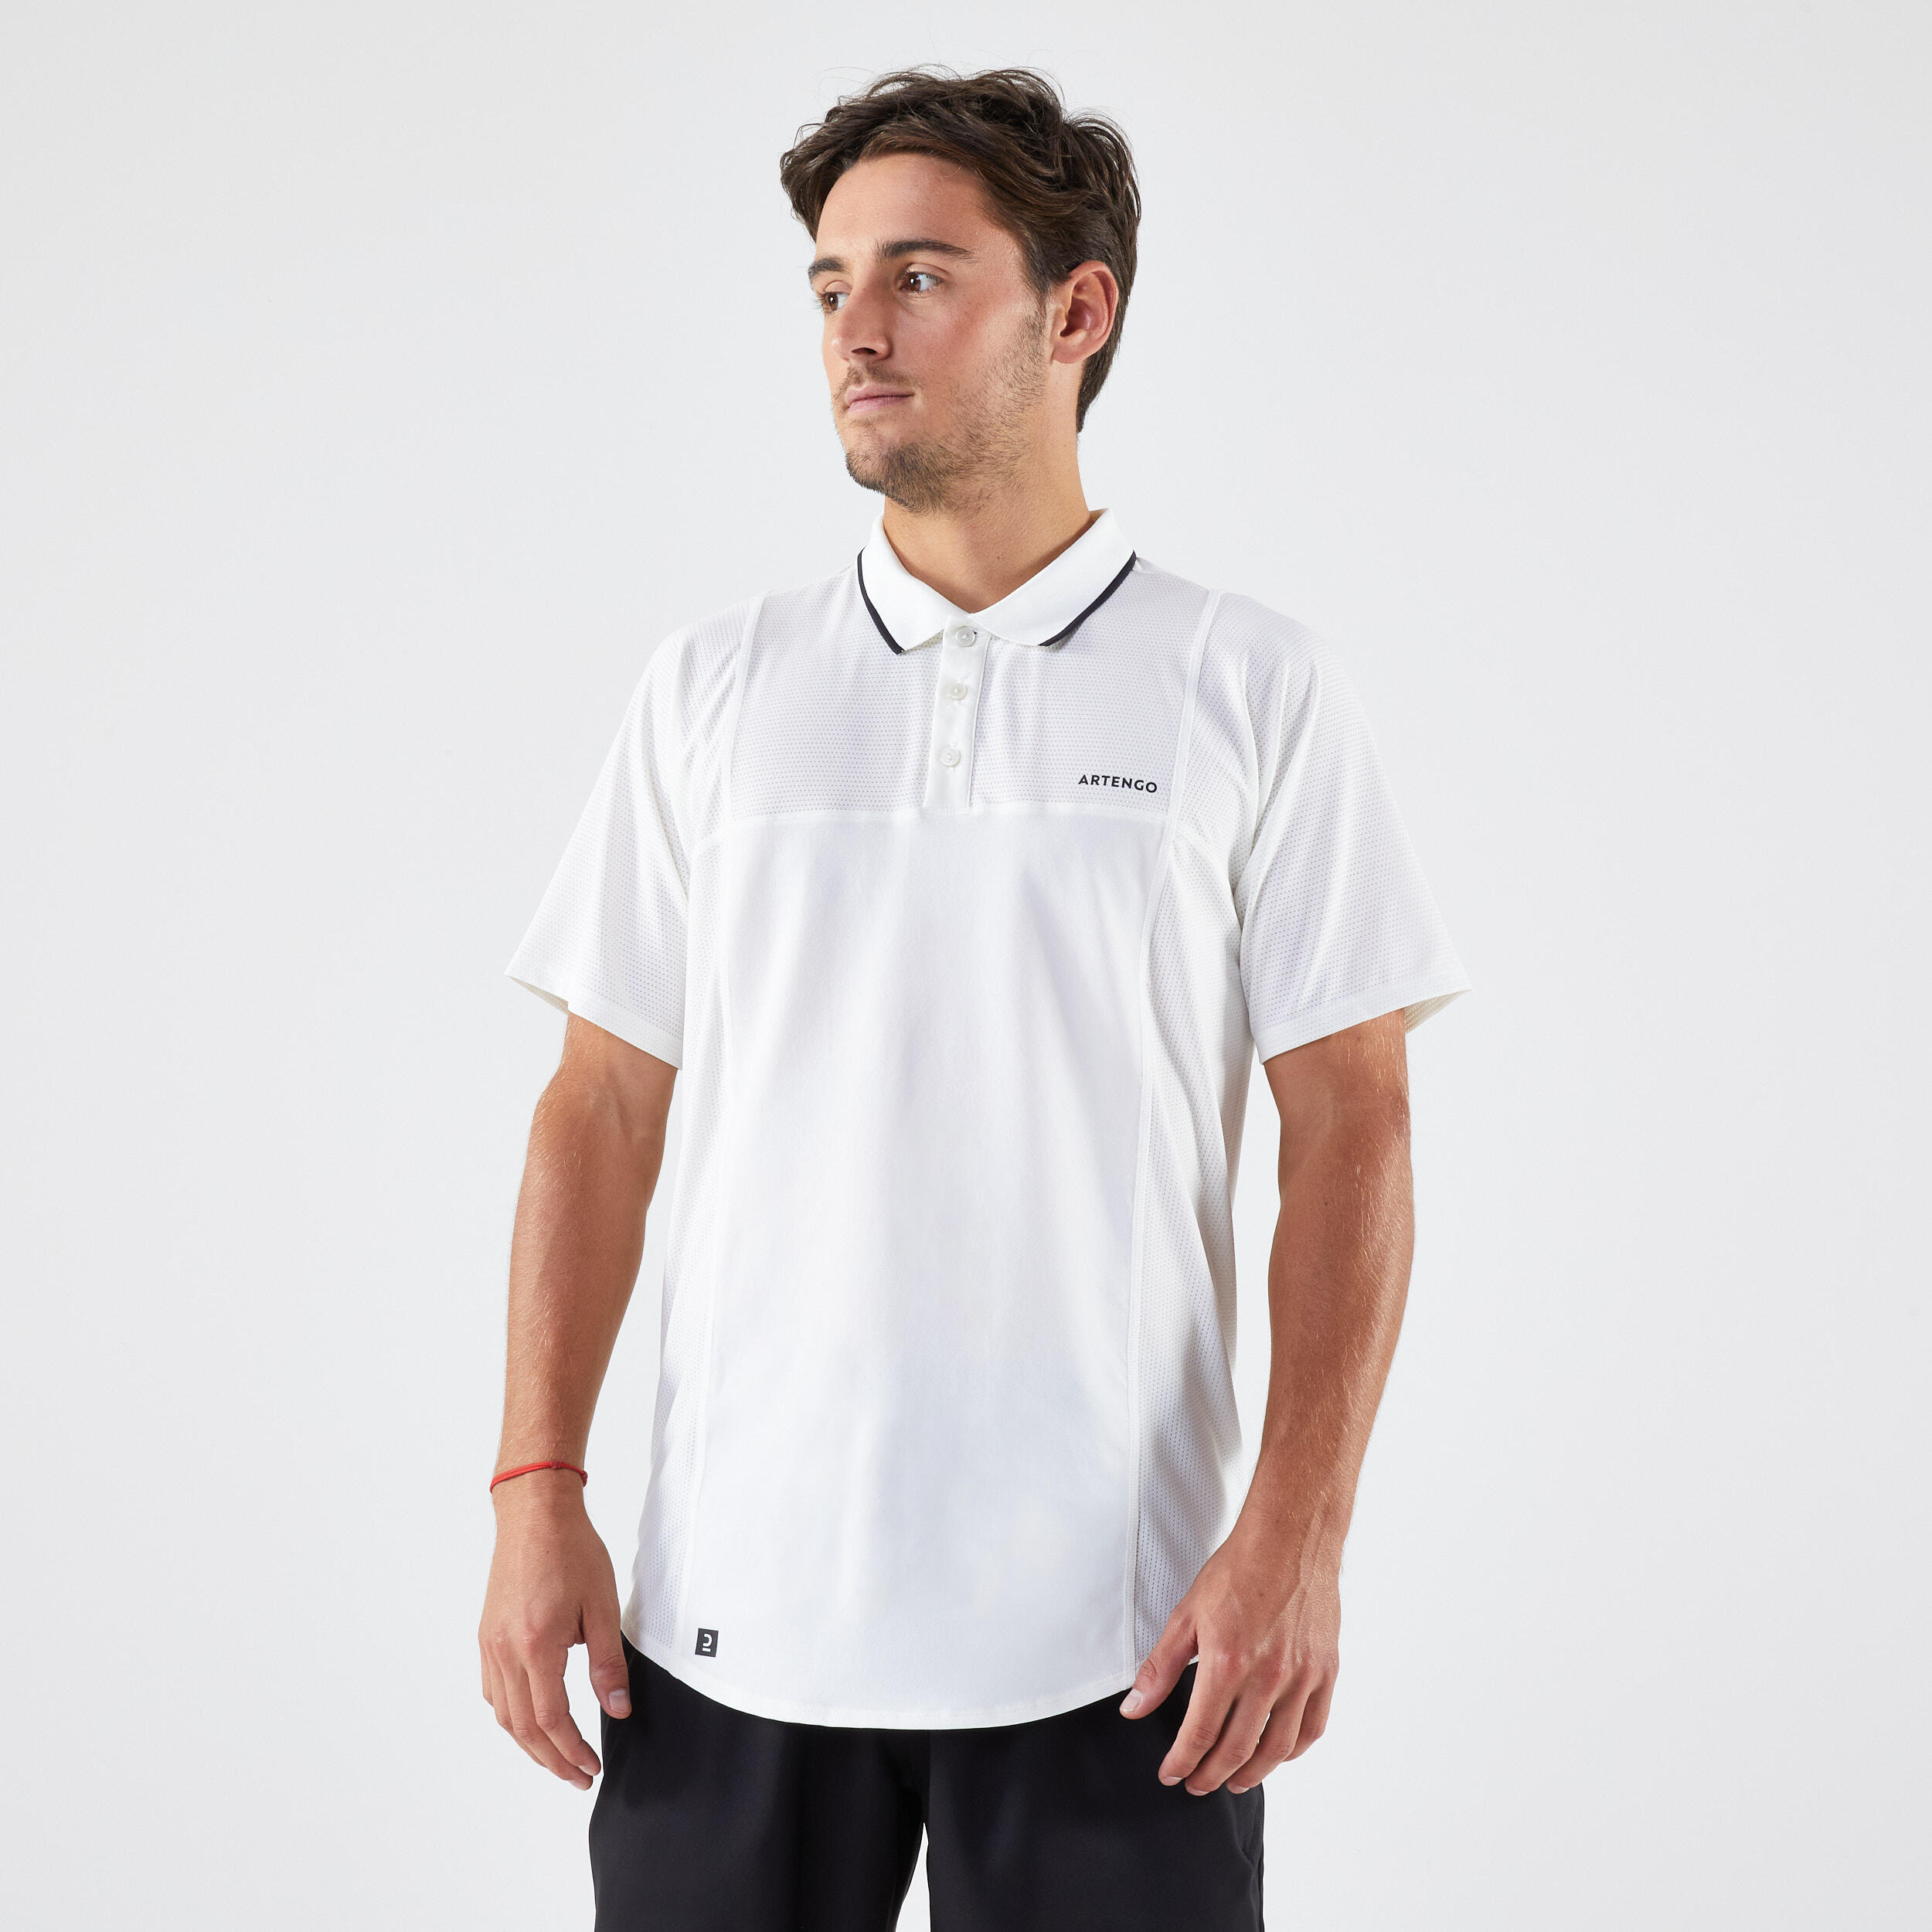 ARTENGO Men's Short-Sleeved Tennis Polo Shirt Dry - White